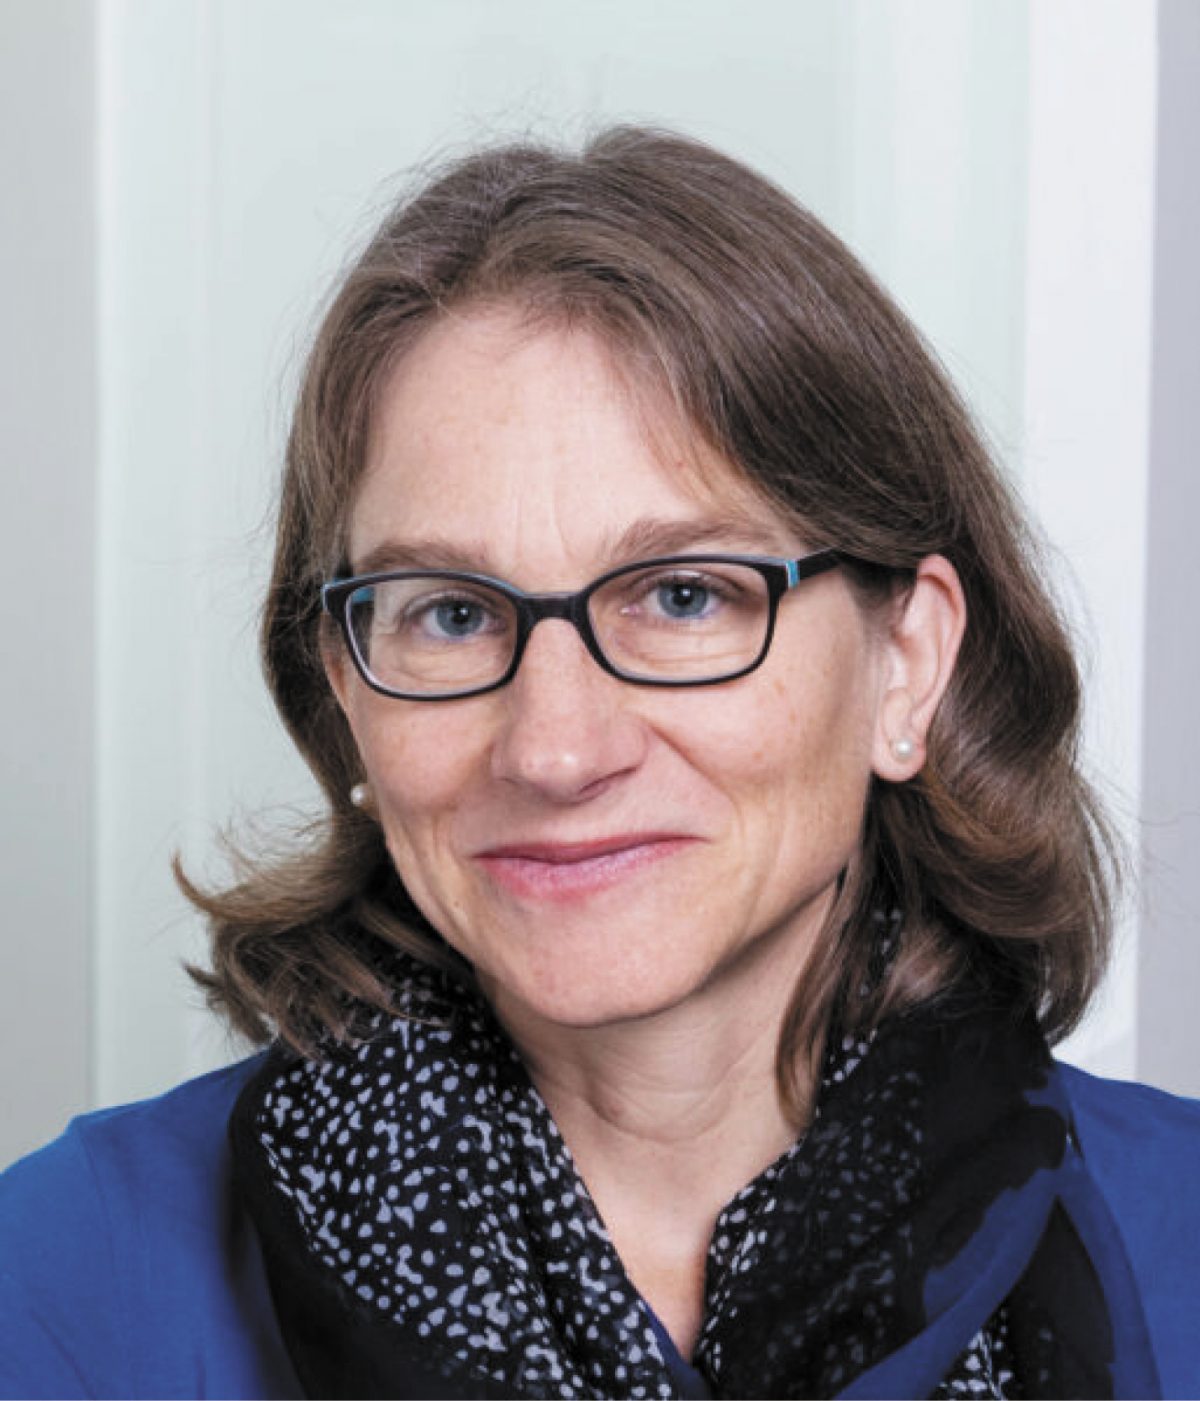 Lena Serck-Hanssen | ETH Zurich Foundation, Cancer research